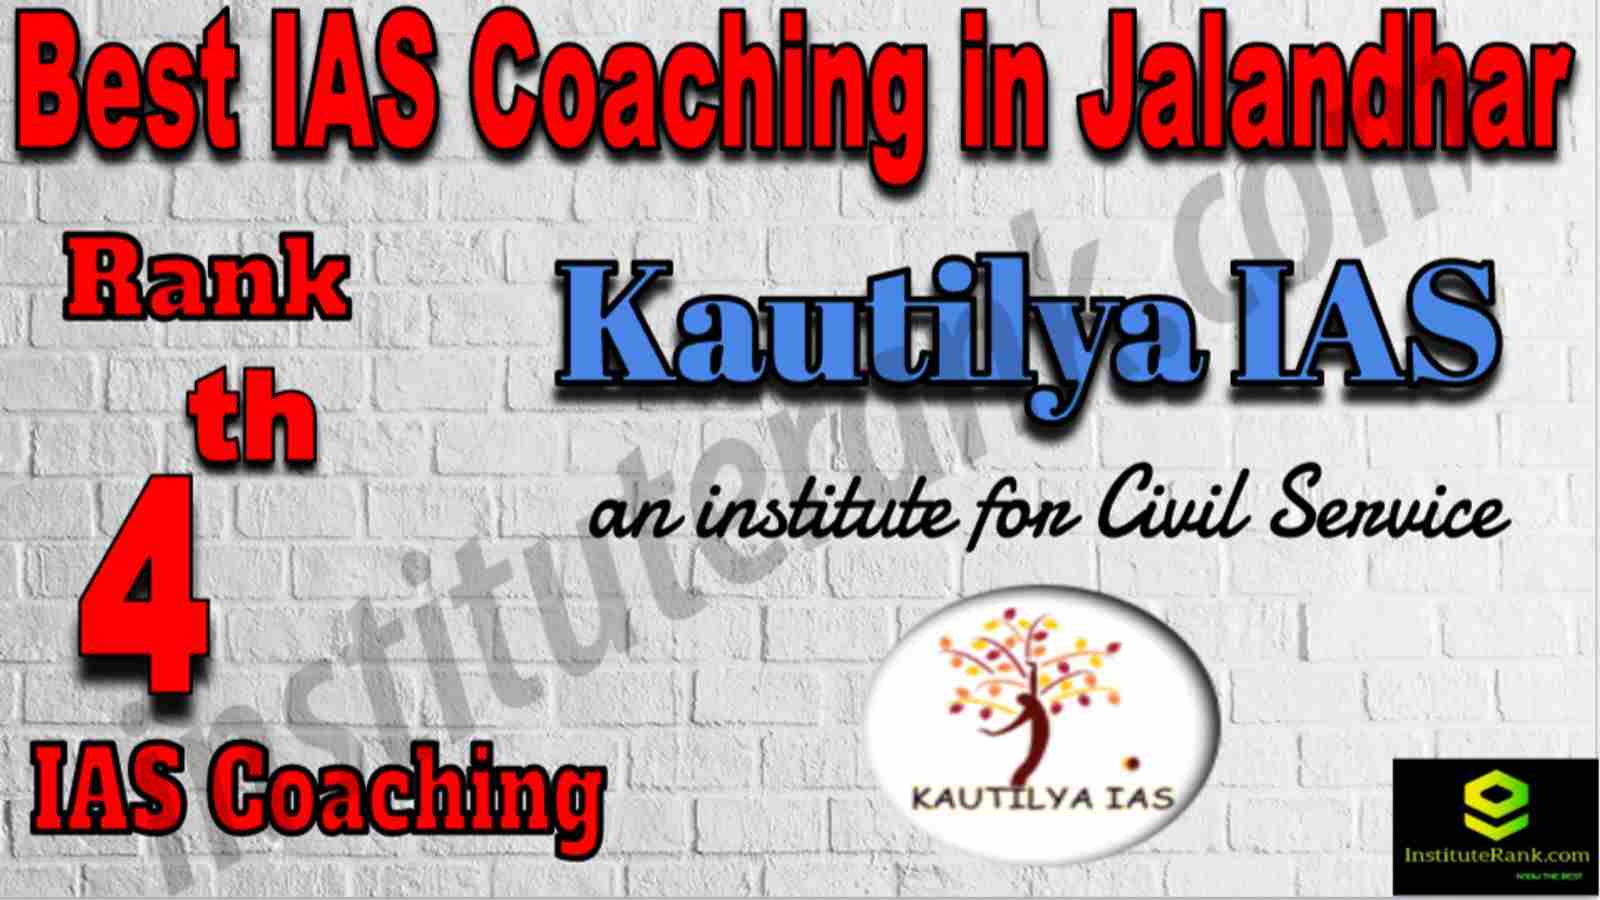 4th Kautilya Academy IAS Coaching in Jalandhar